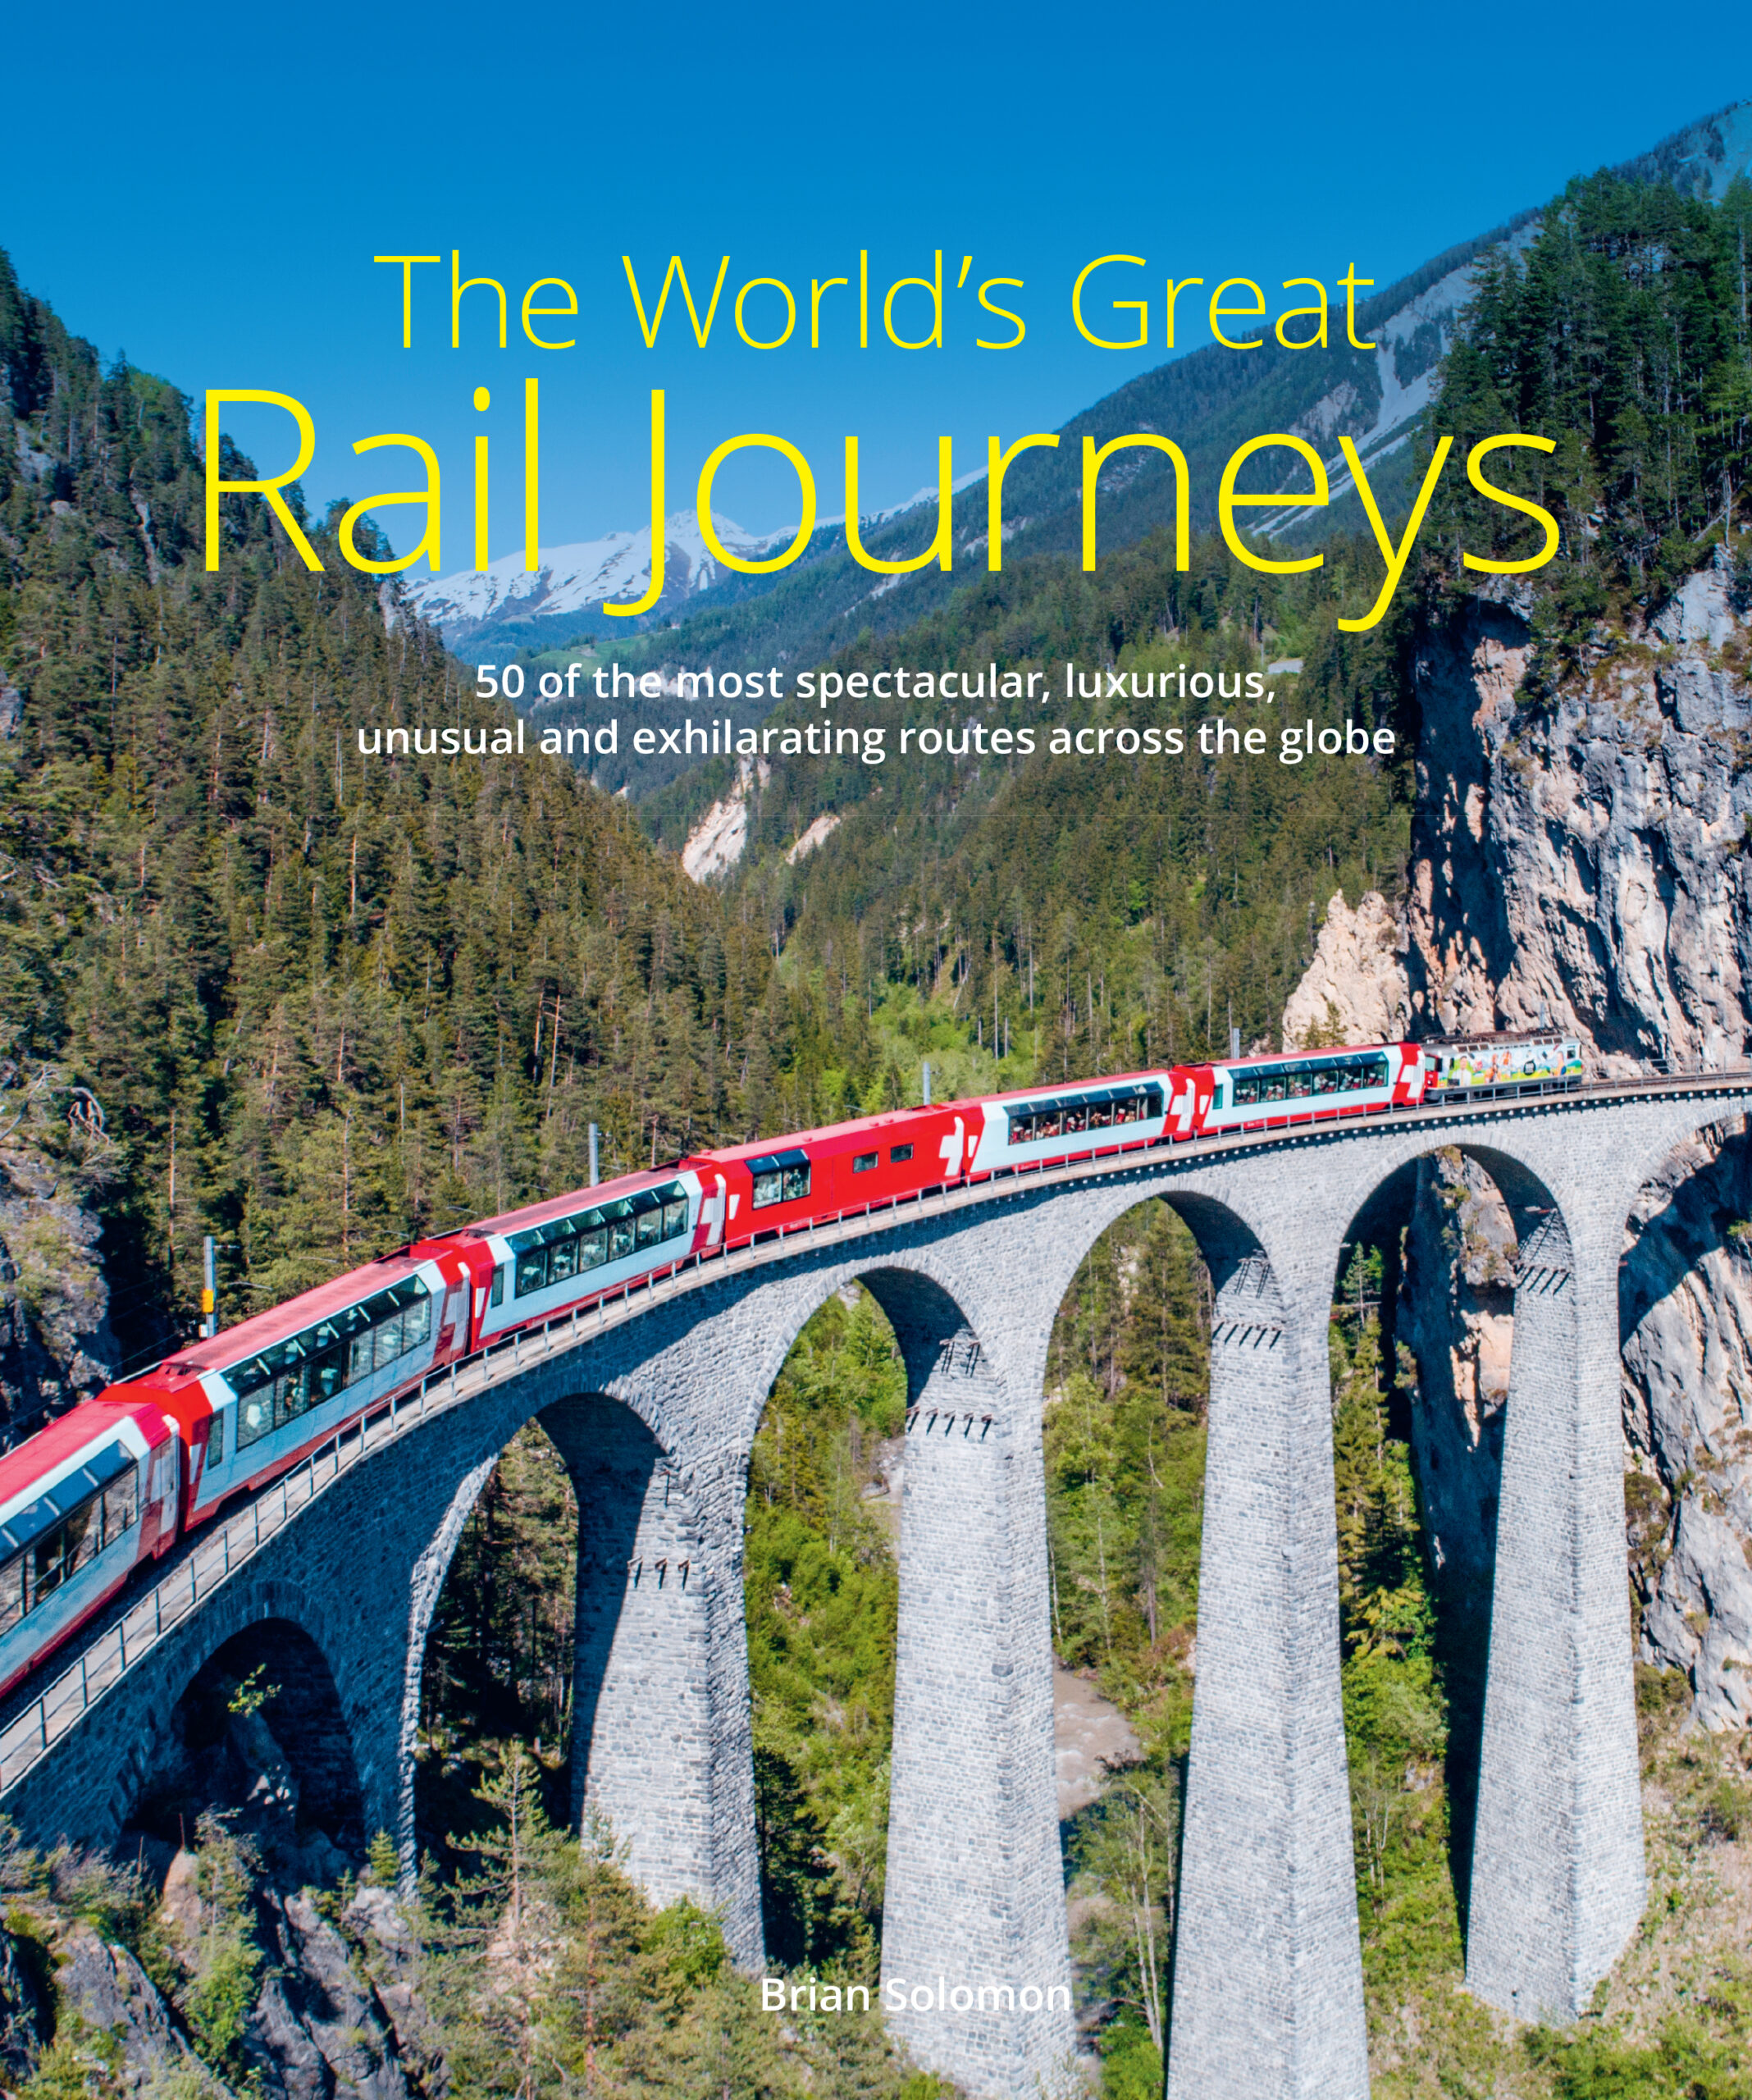 the railway journey schivelbusch summary